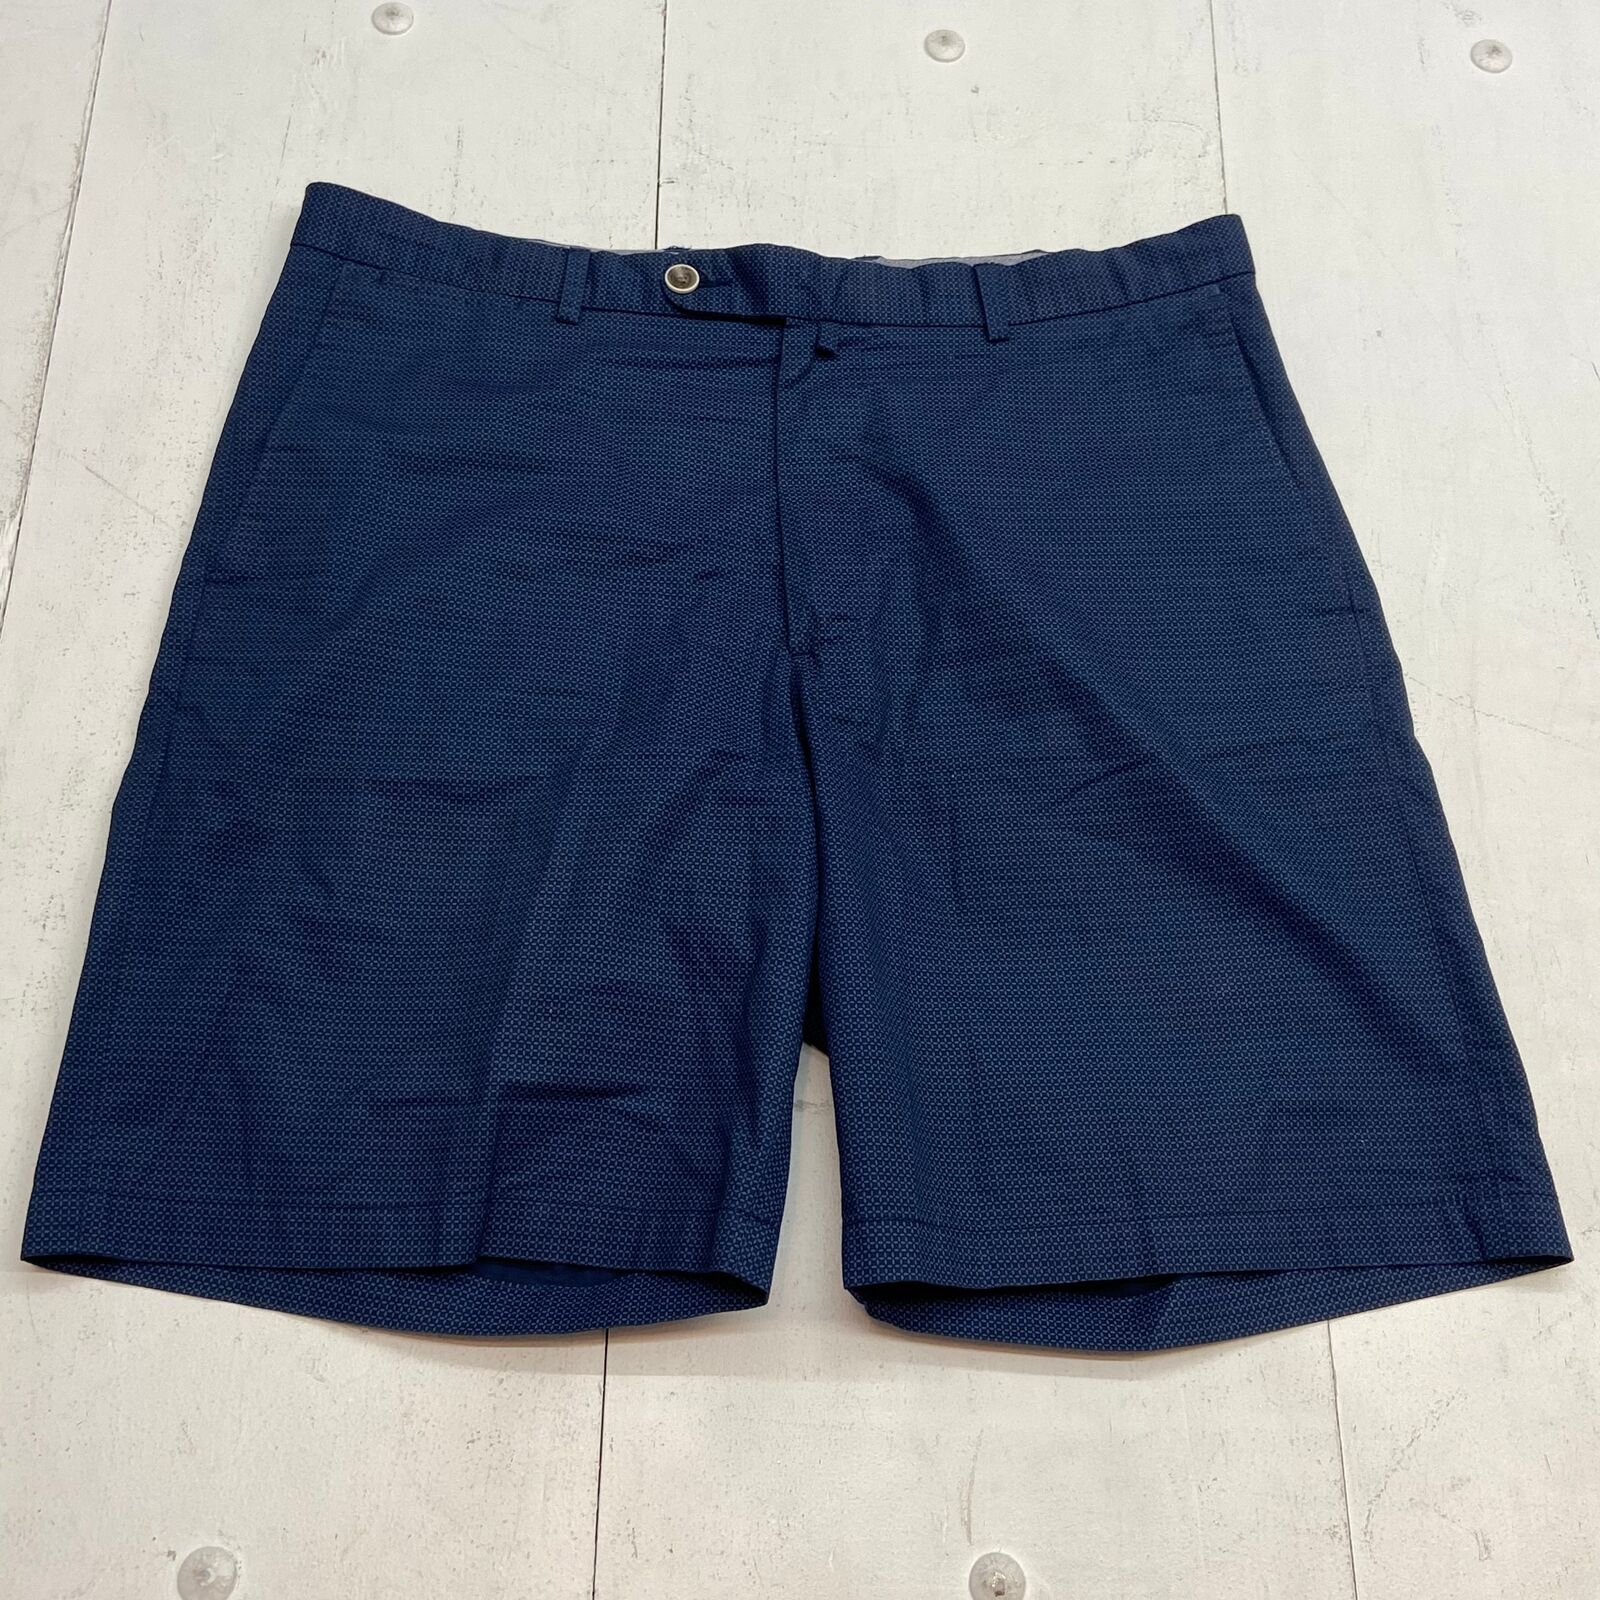 Peter Millar Navy Chino Cotton Shorts Men Size 36